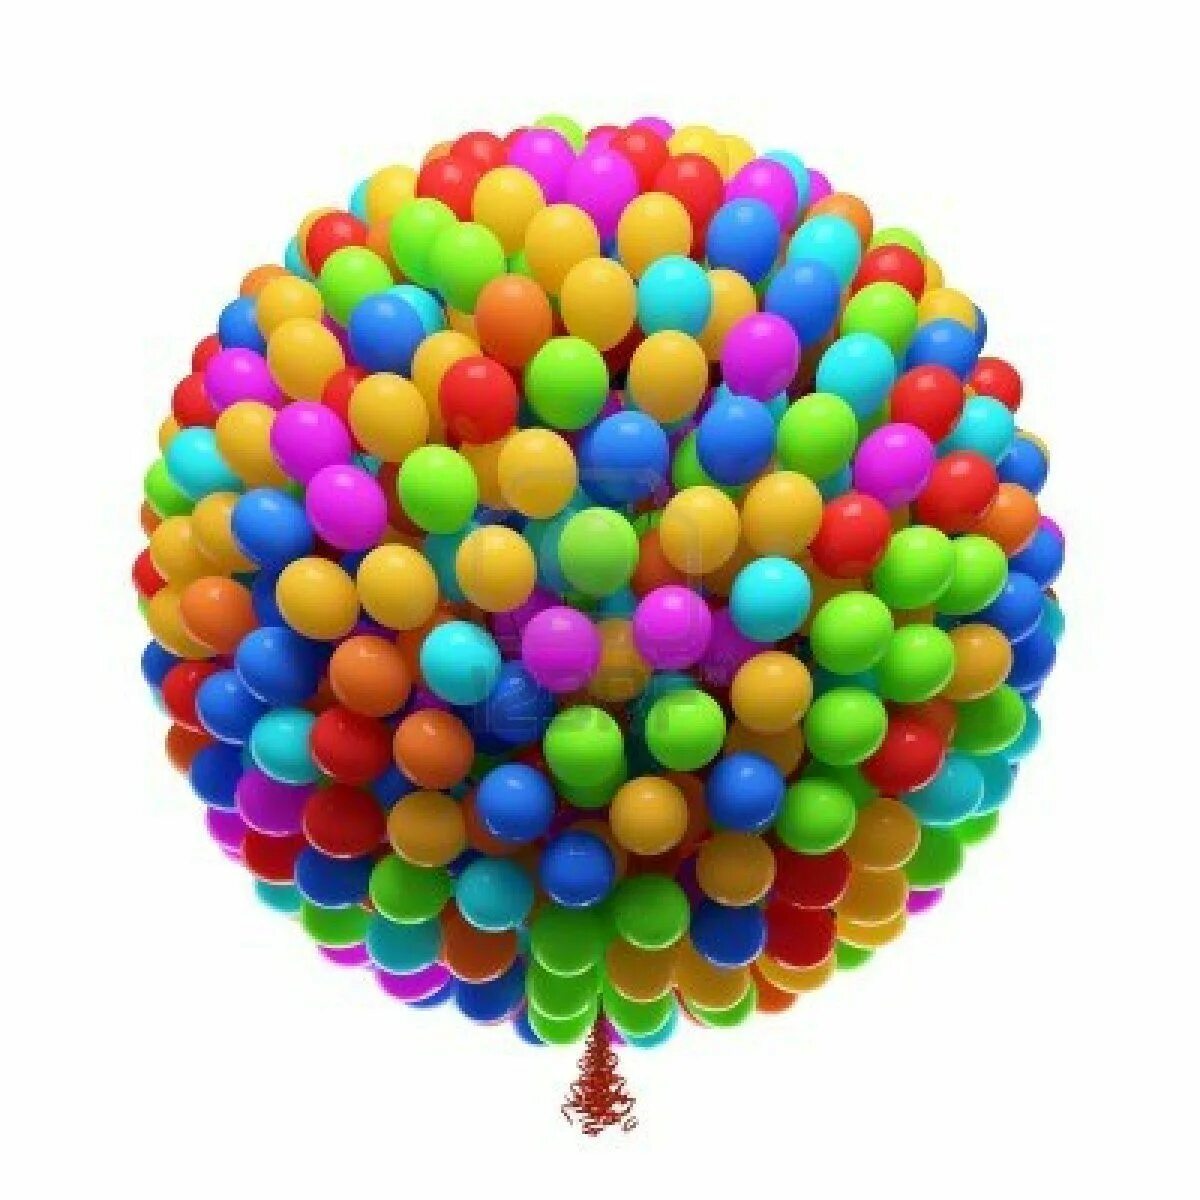 Купить шары в москве недорого с доставкой. Воздушный шарик. Цветные шары. Разноцветный шар. Разноцветные шарики воздушные.